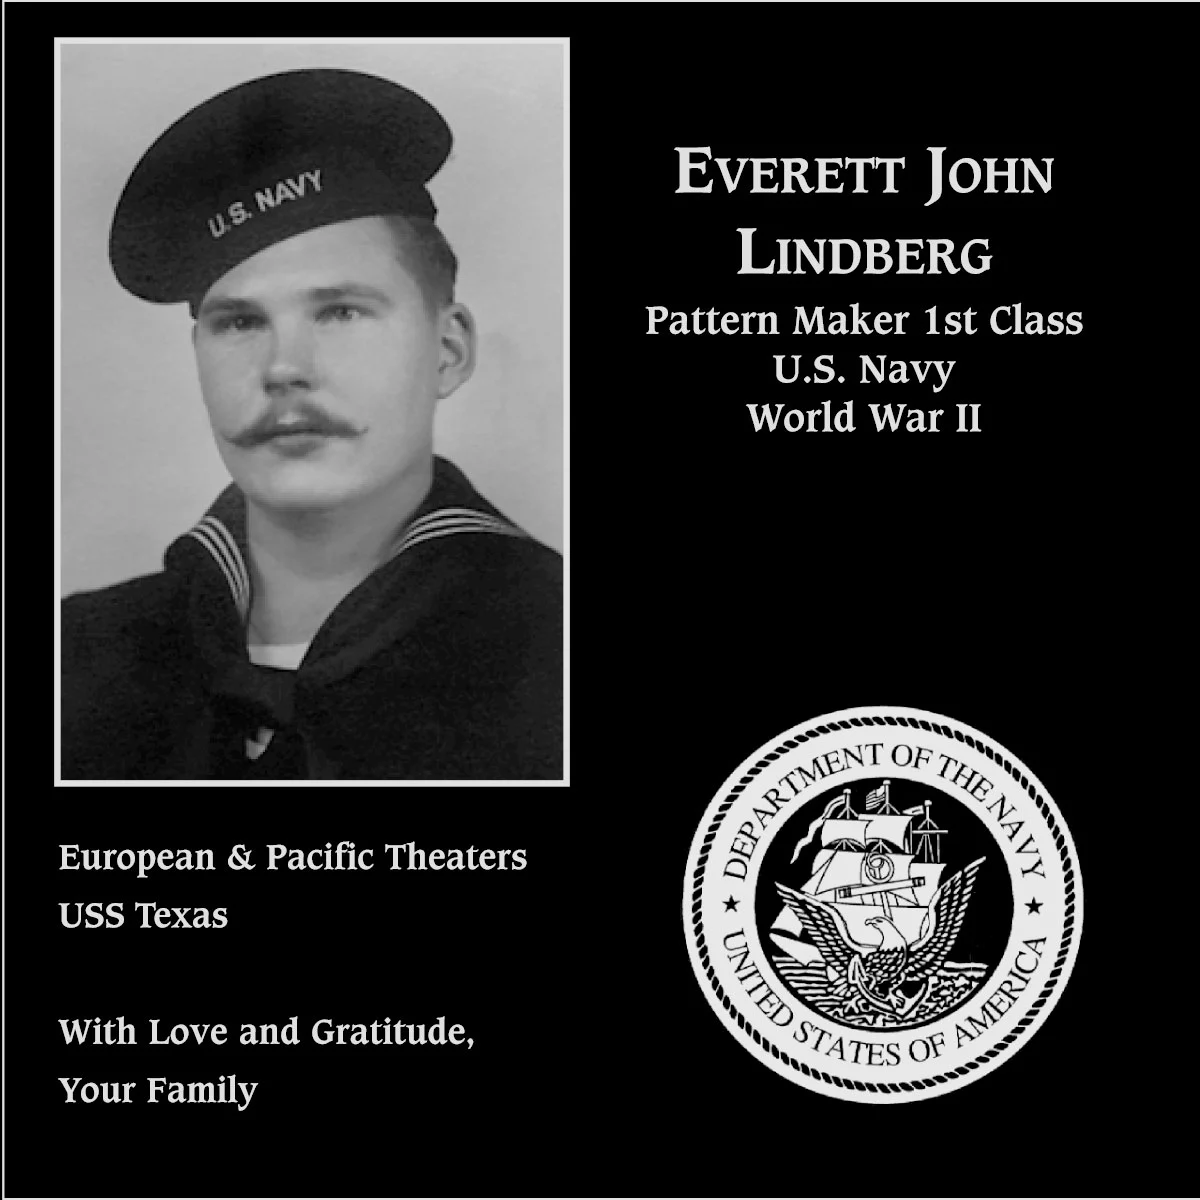 Everett John Lindberg